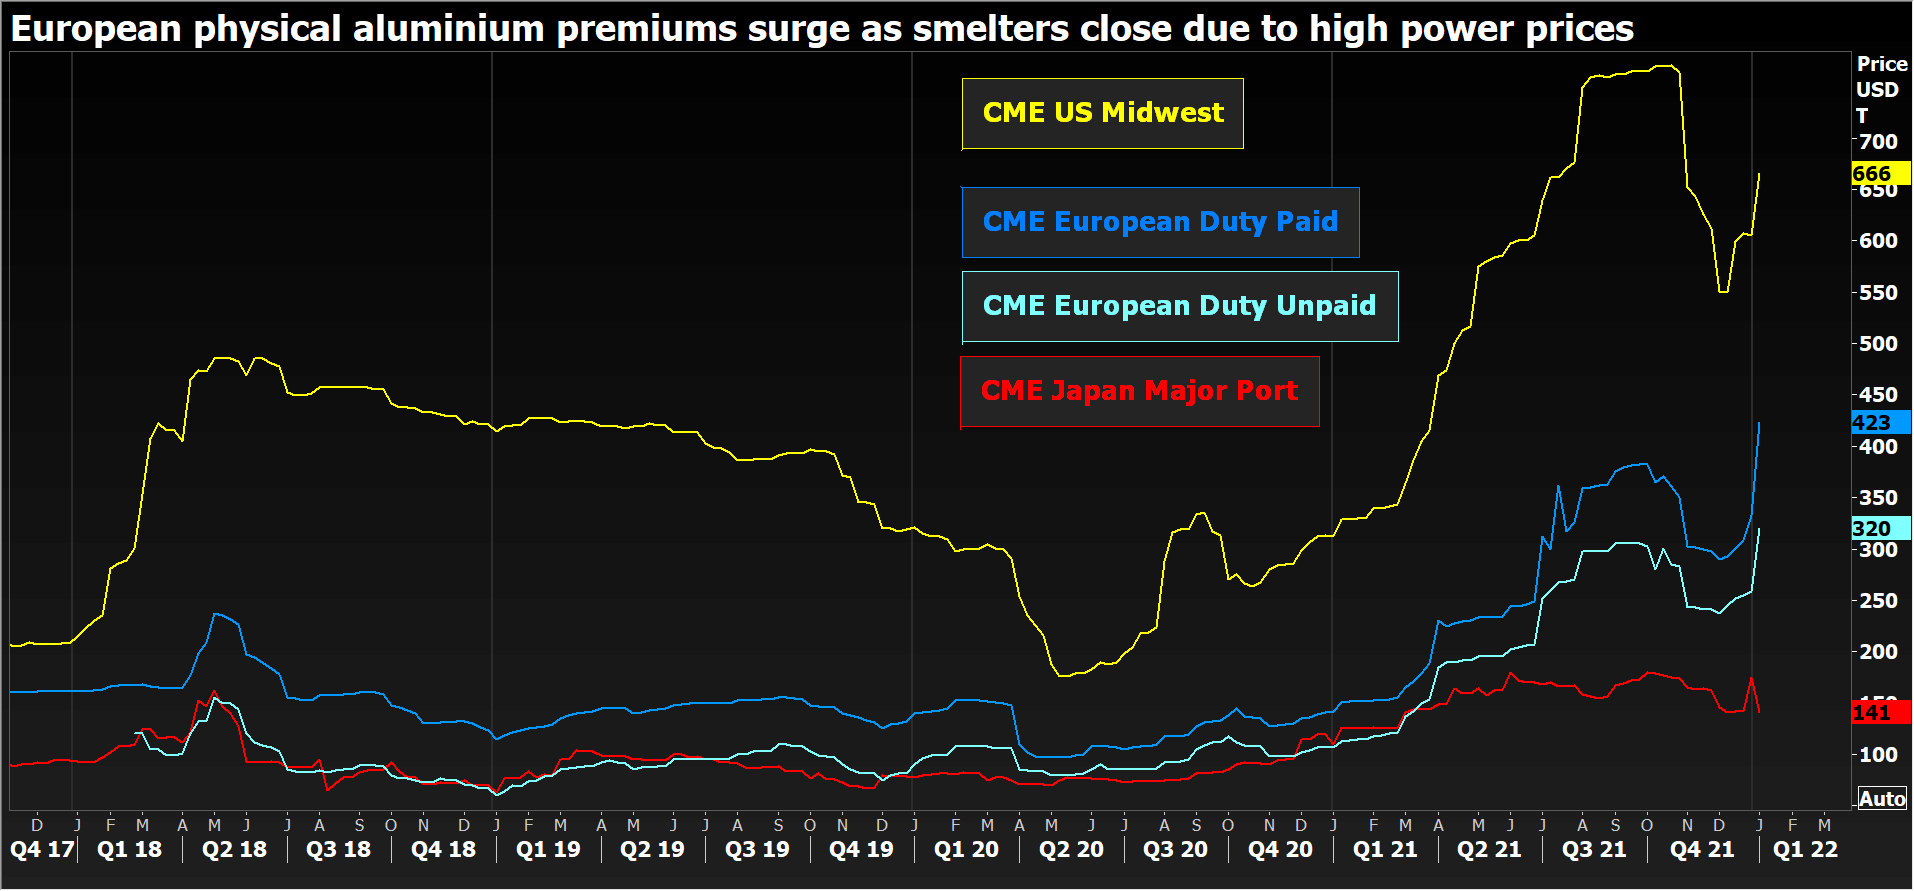 European aluminium premiums surge as smelters close